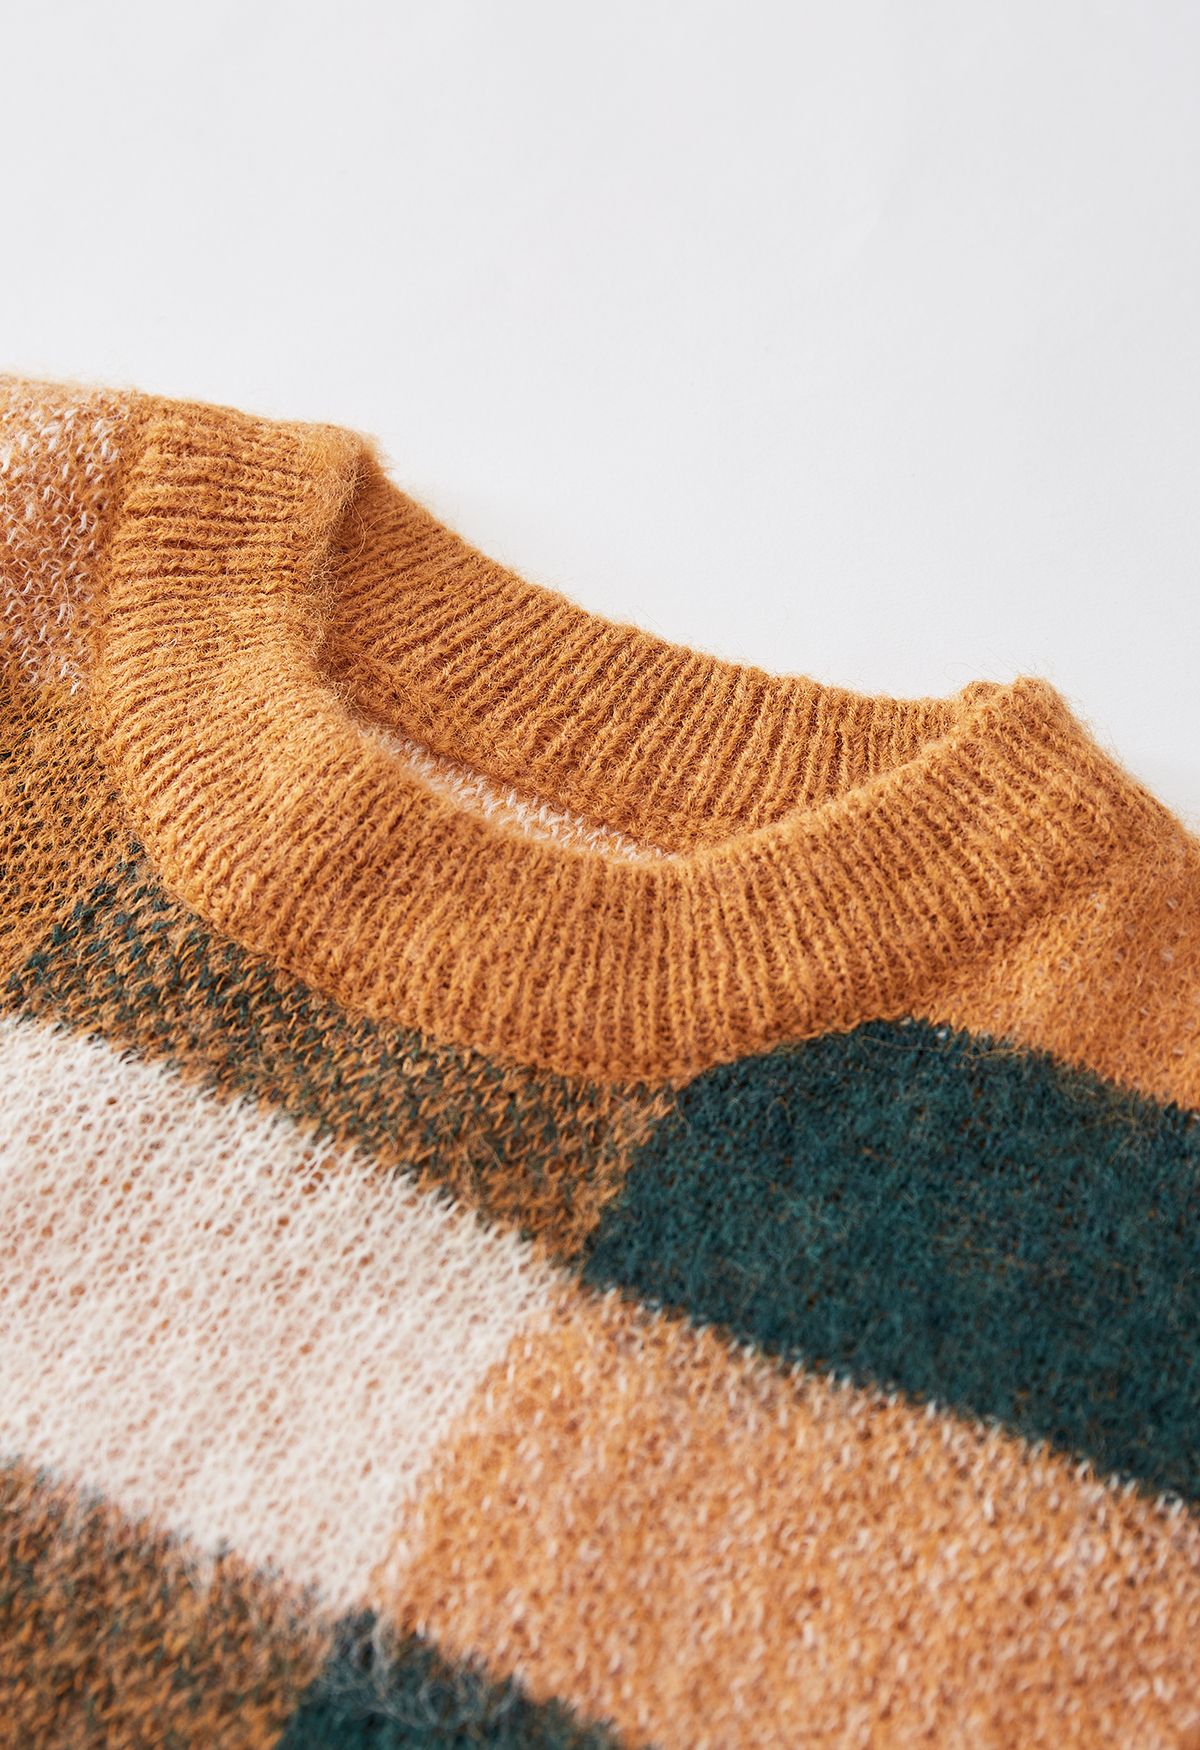 Pull en tricot flou à carreaux colorés